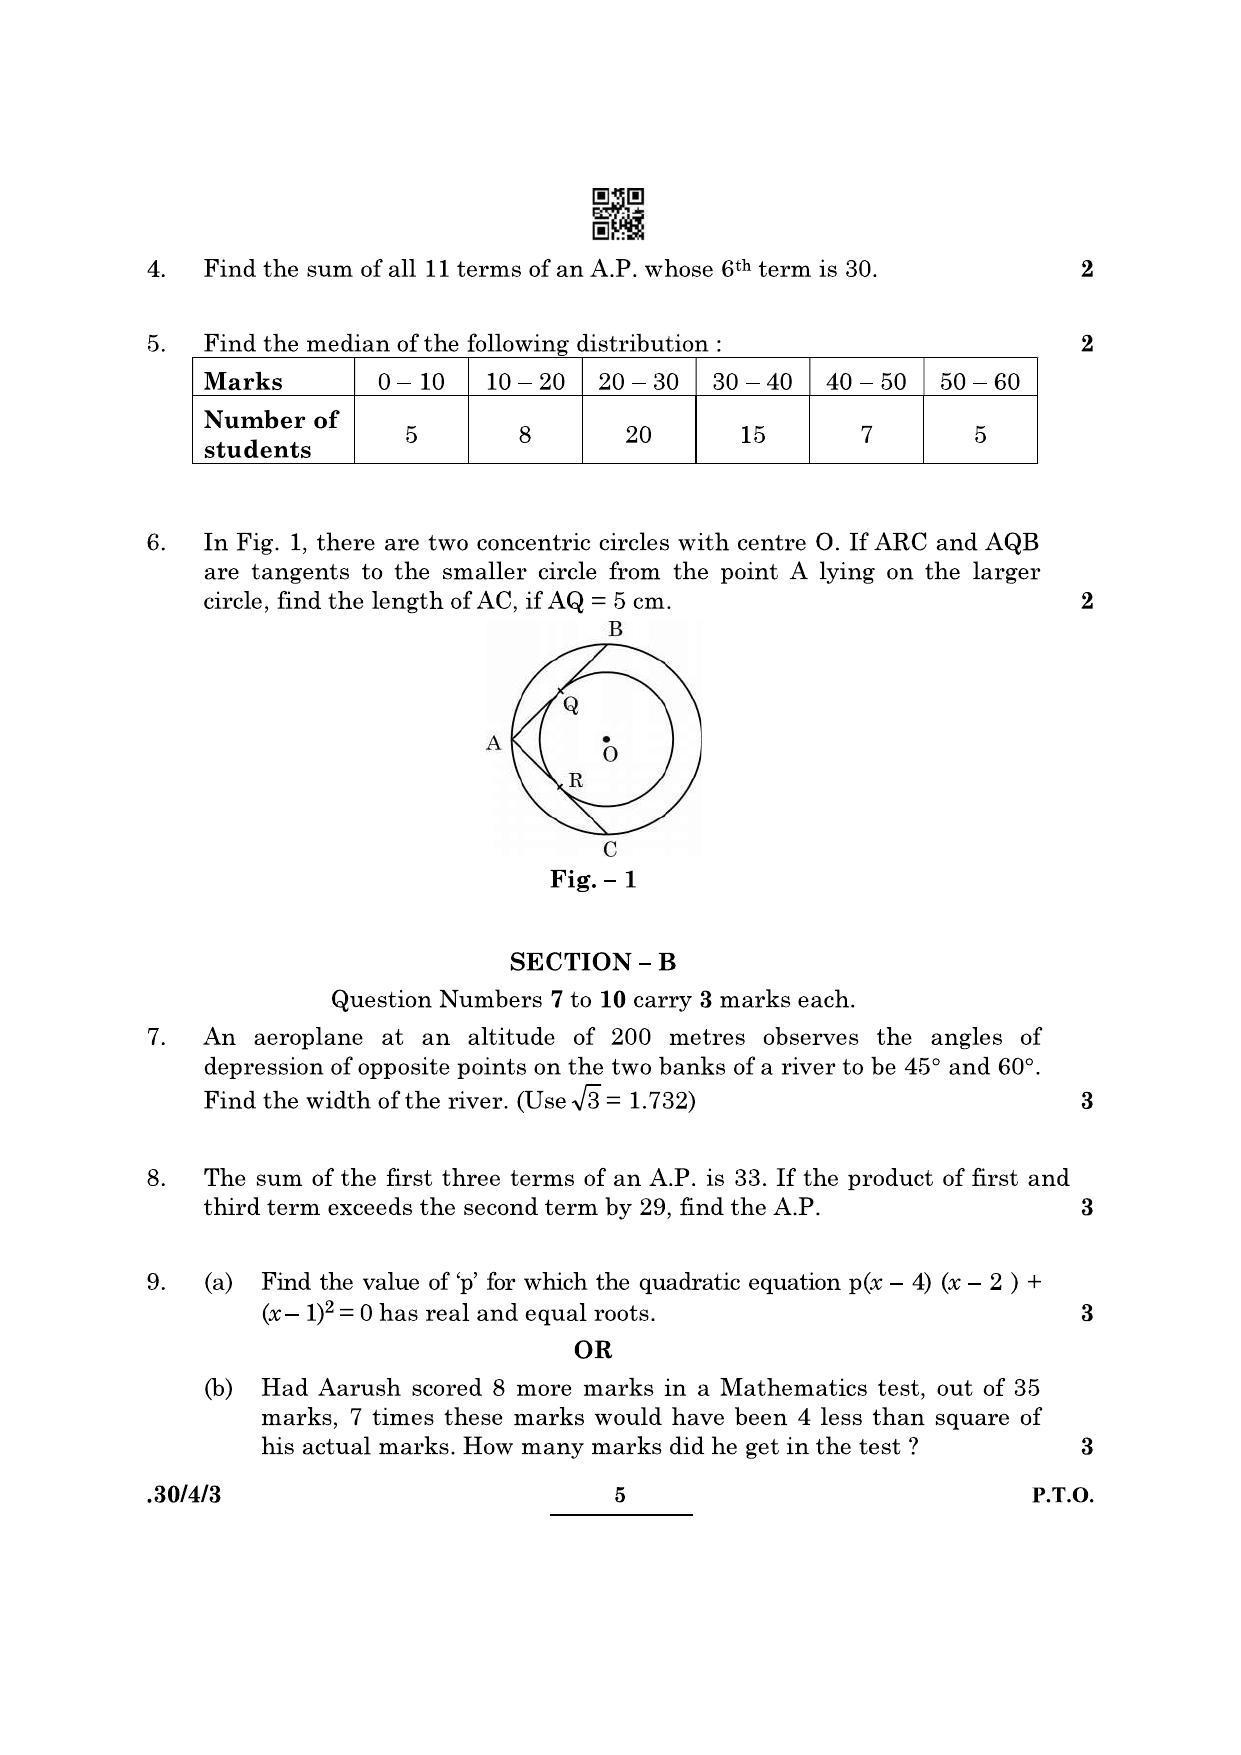 CBSE Class 10 Maths (30/4/3 - SET III) 2022 Question Paper - Page 5